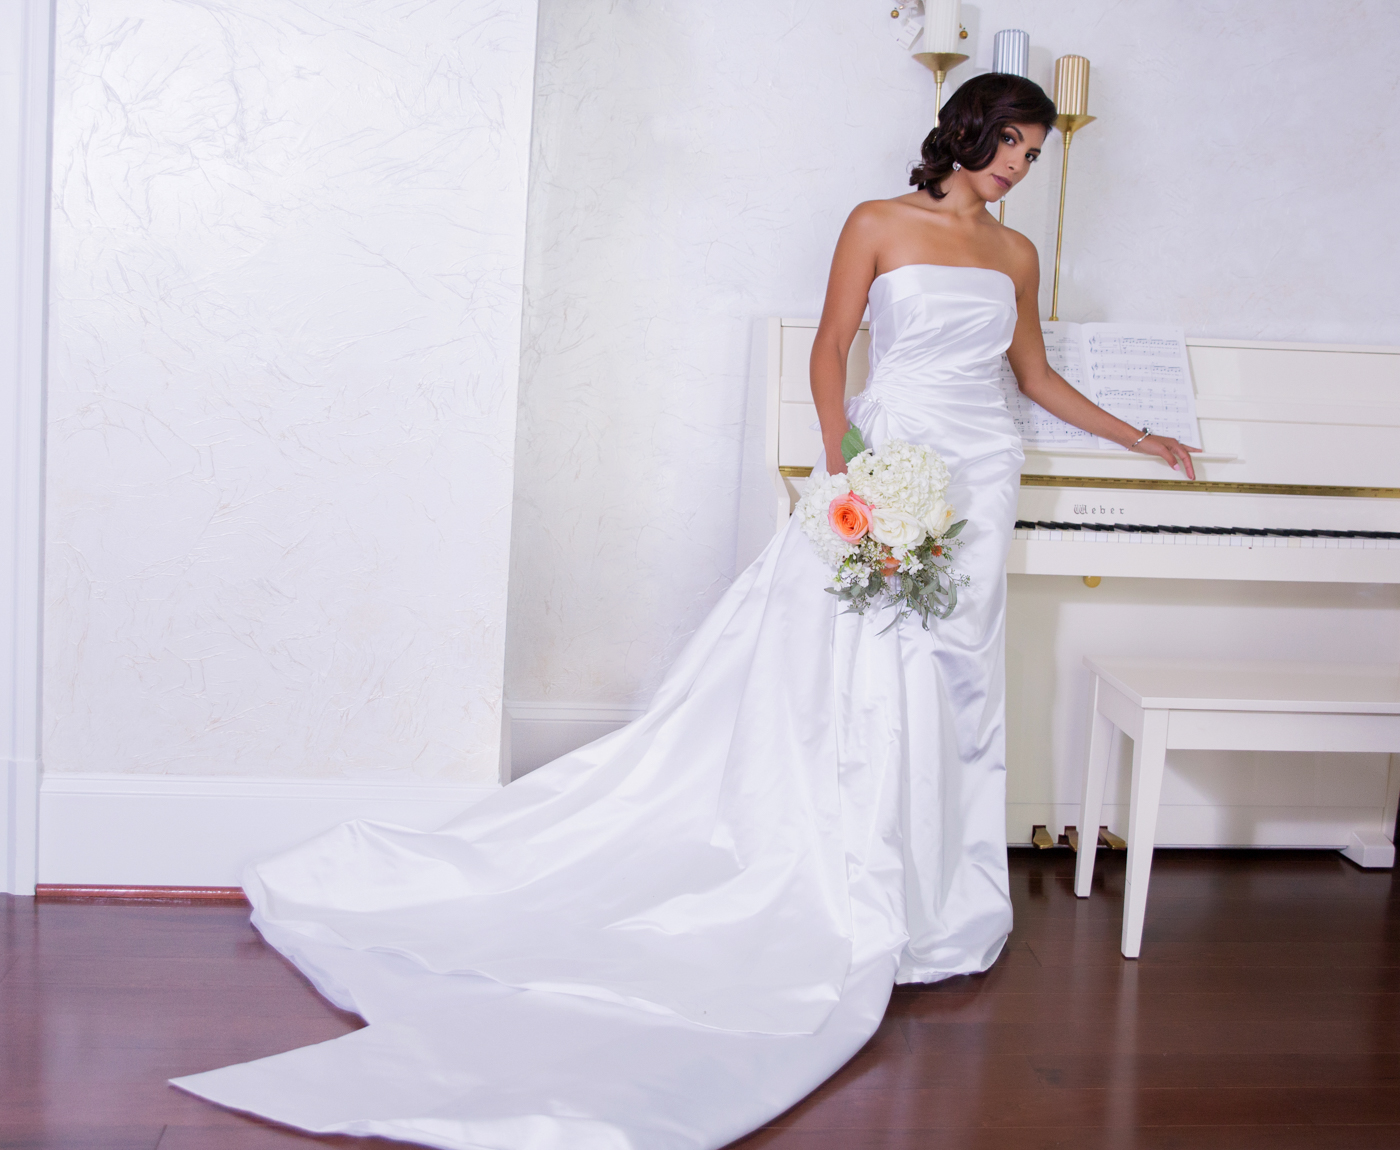 bridal-fashion-photo-shoot-ksenia-pro-photography-31